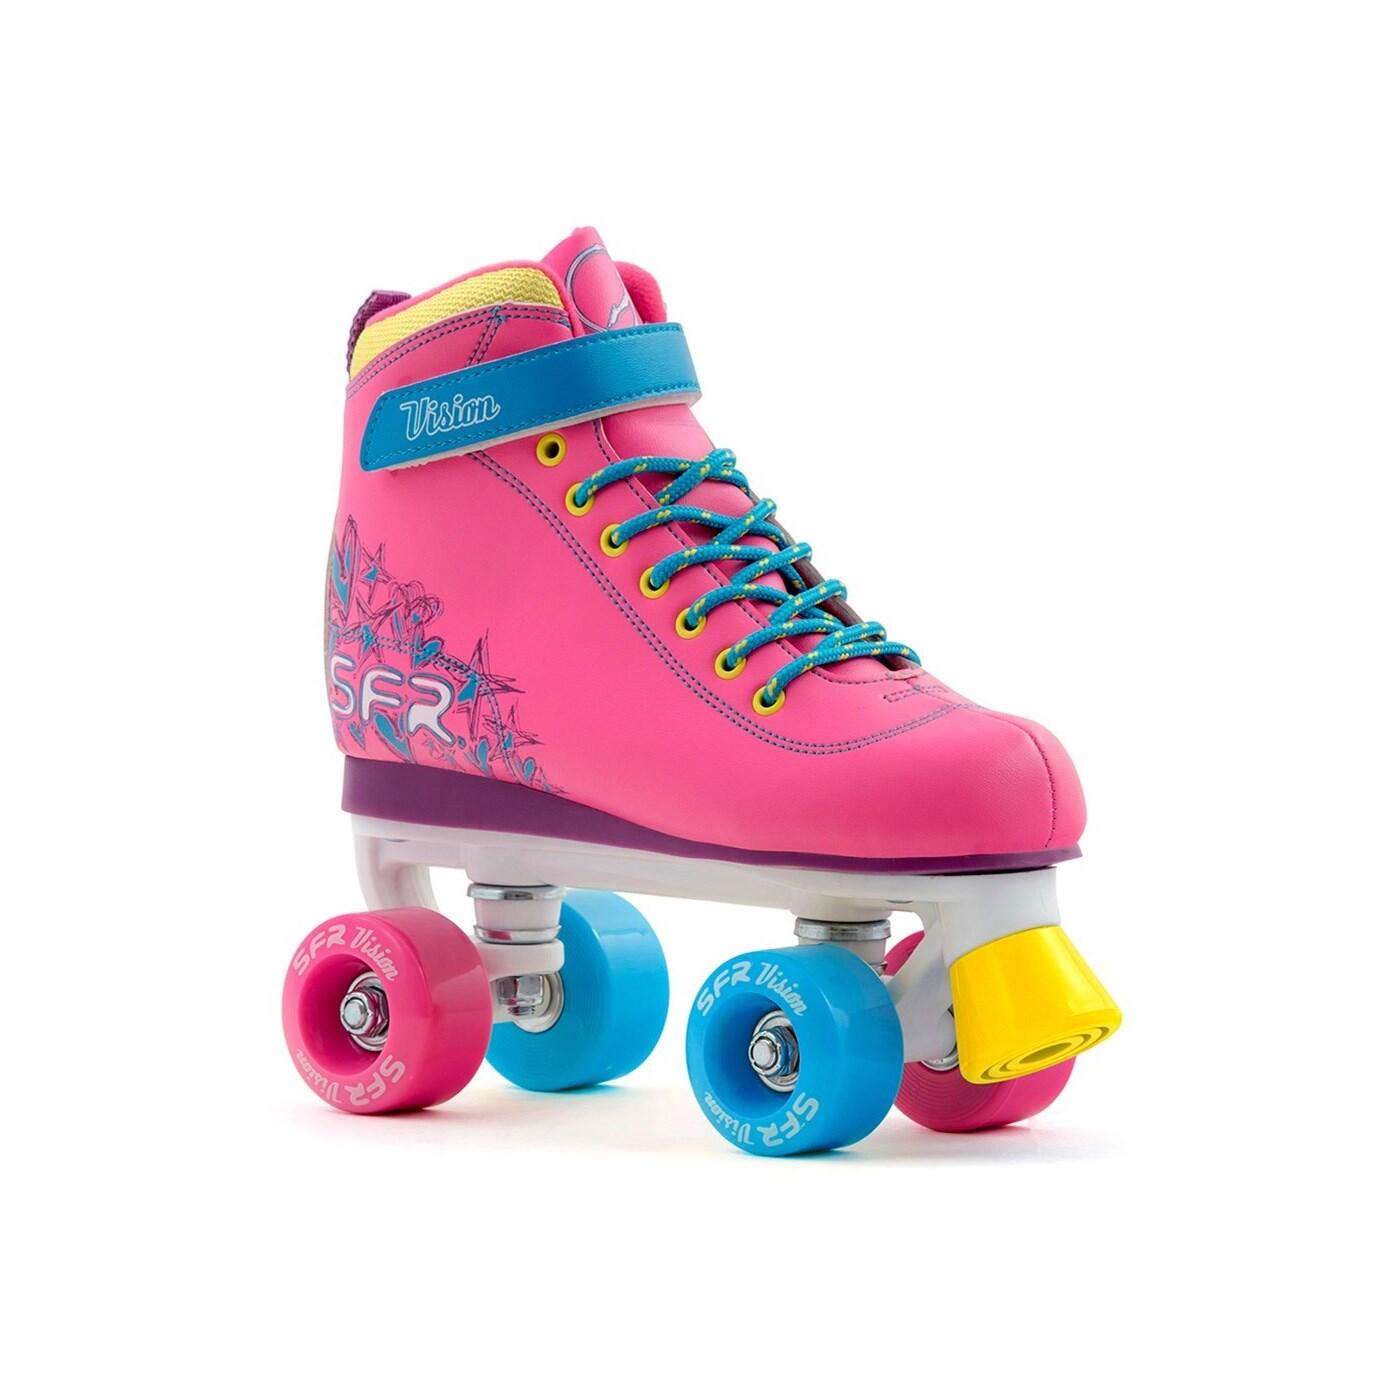 SFR Vision II Tropical Pink Kids Quad Roller Skates